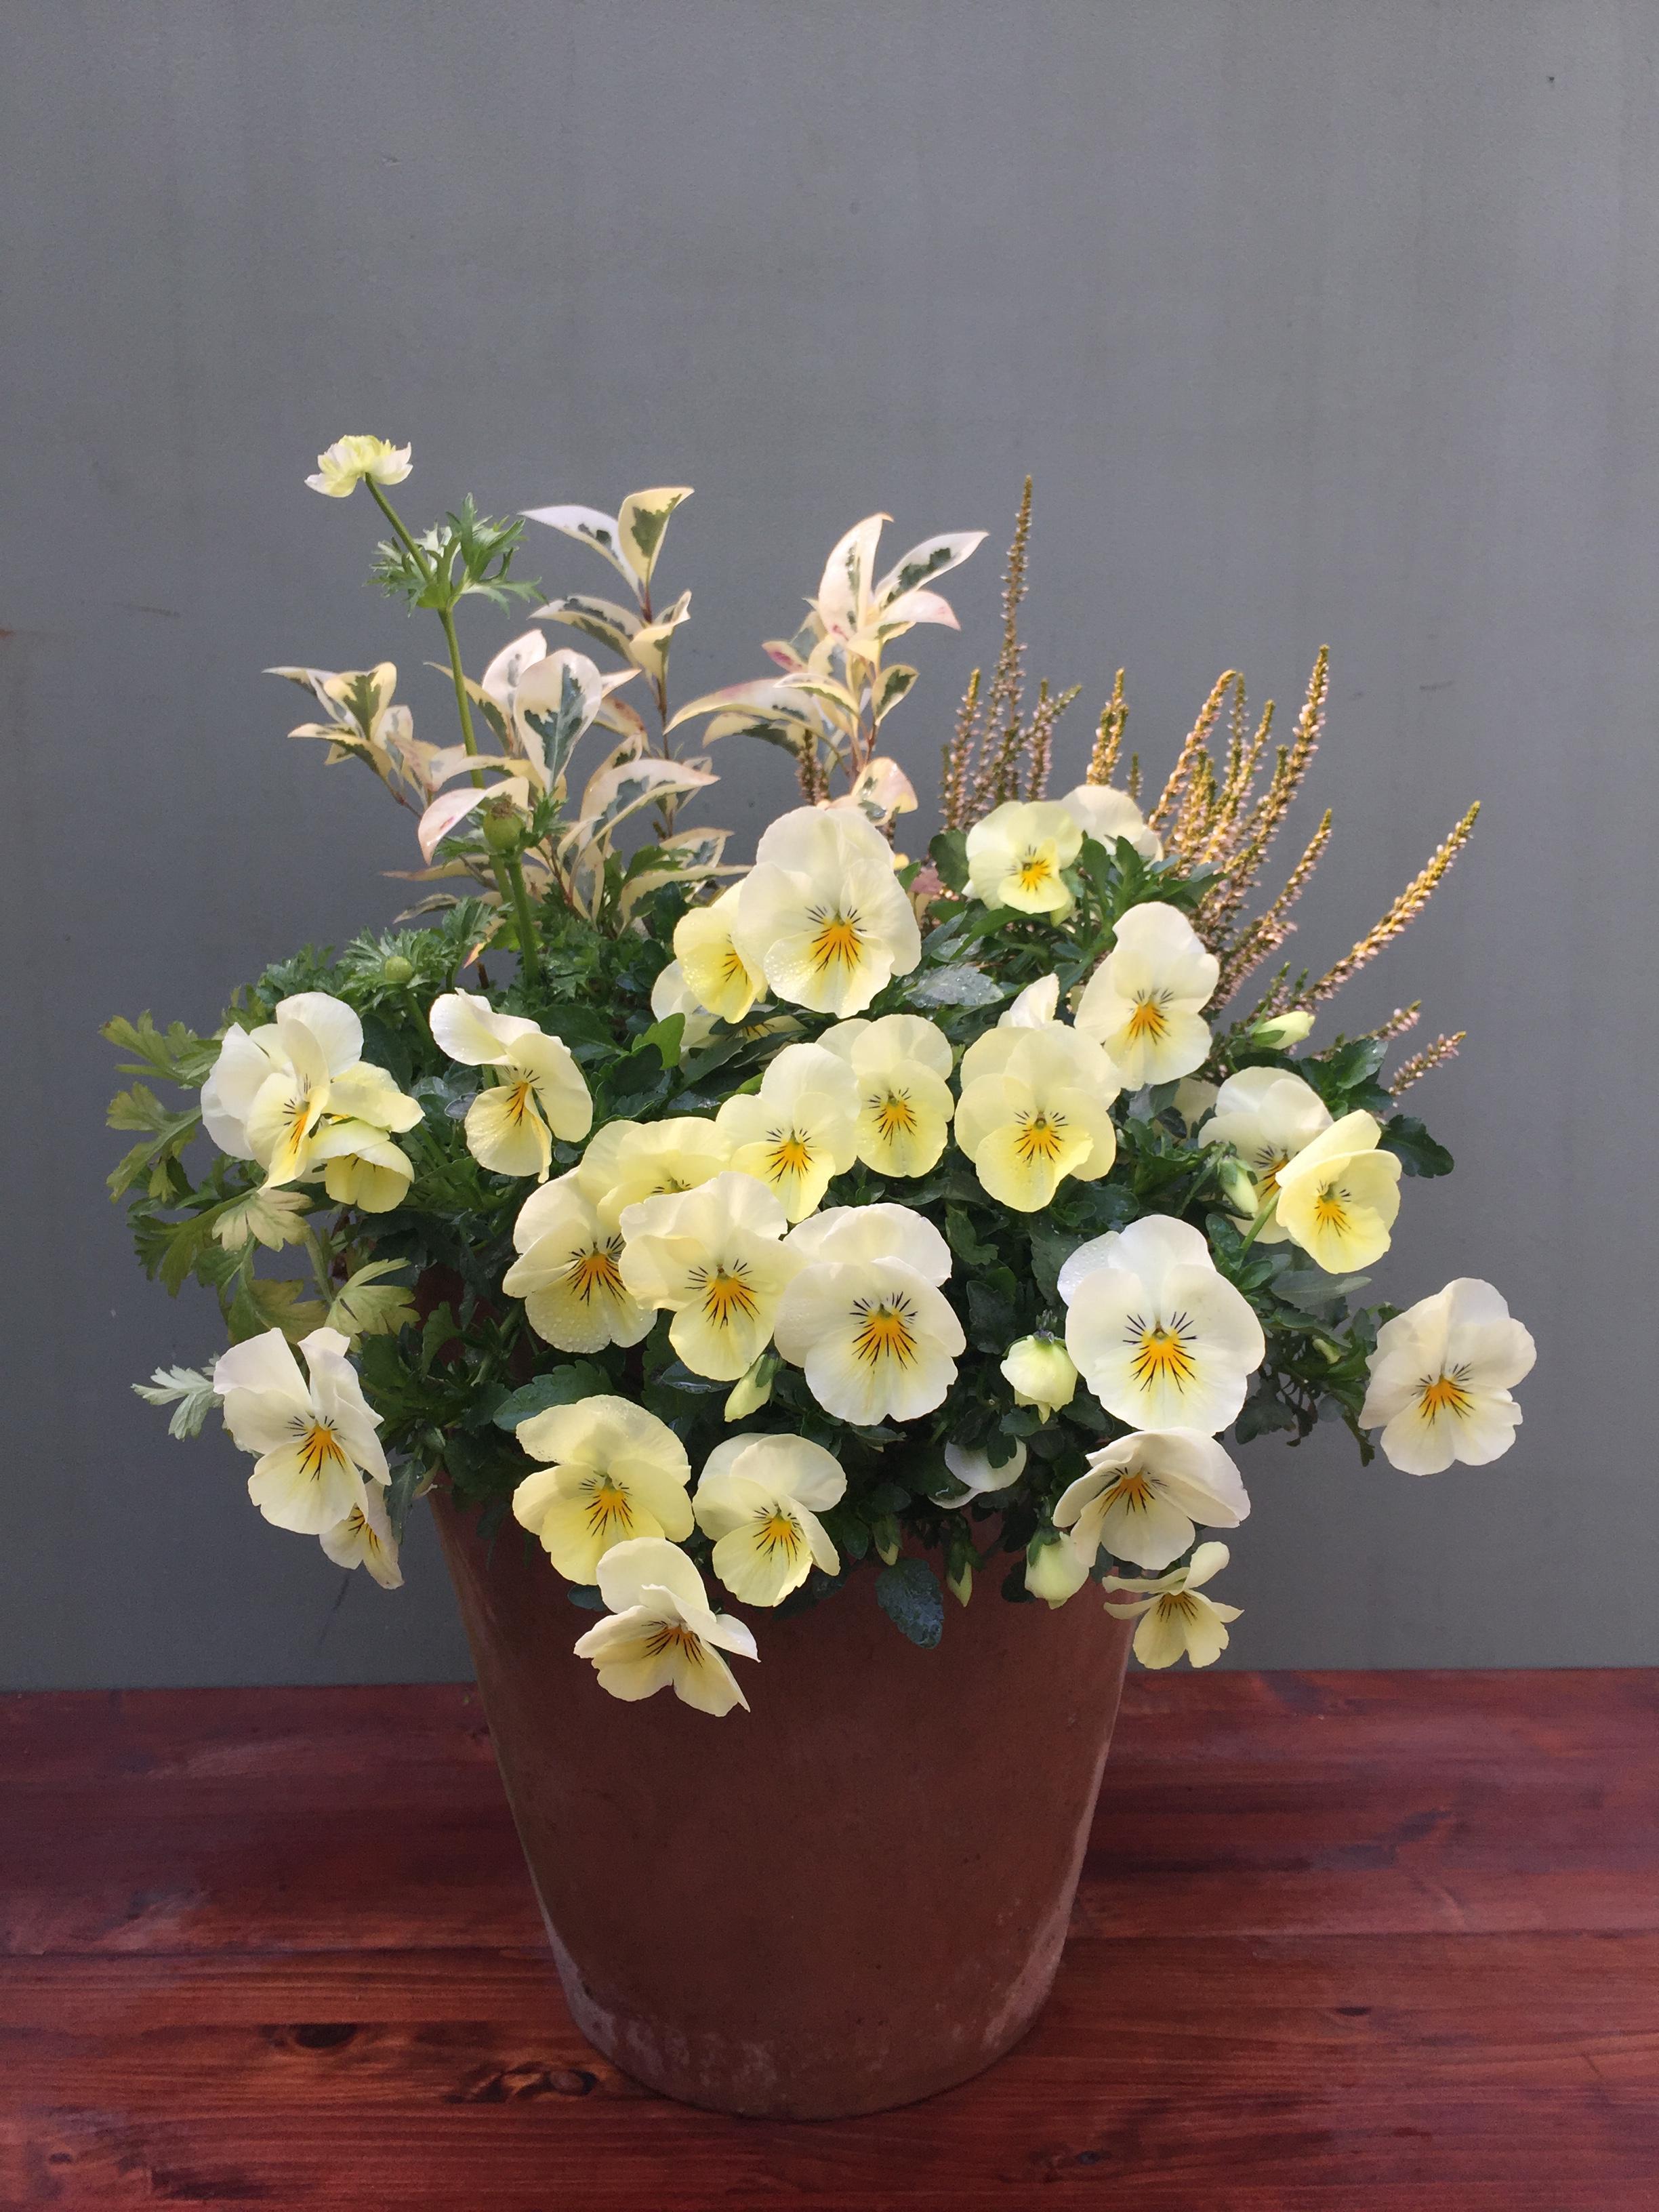 秋に作った寄せ植え3月には 吉谷桂子のガーデンダイアリー 花と緑と豊かに暮らすガーデニング手帖